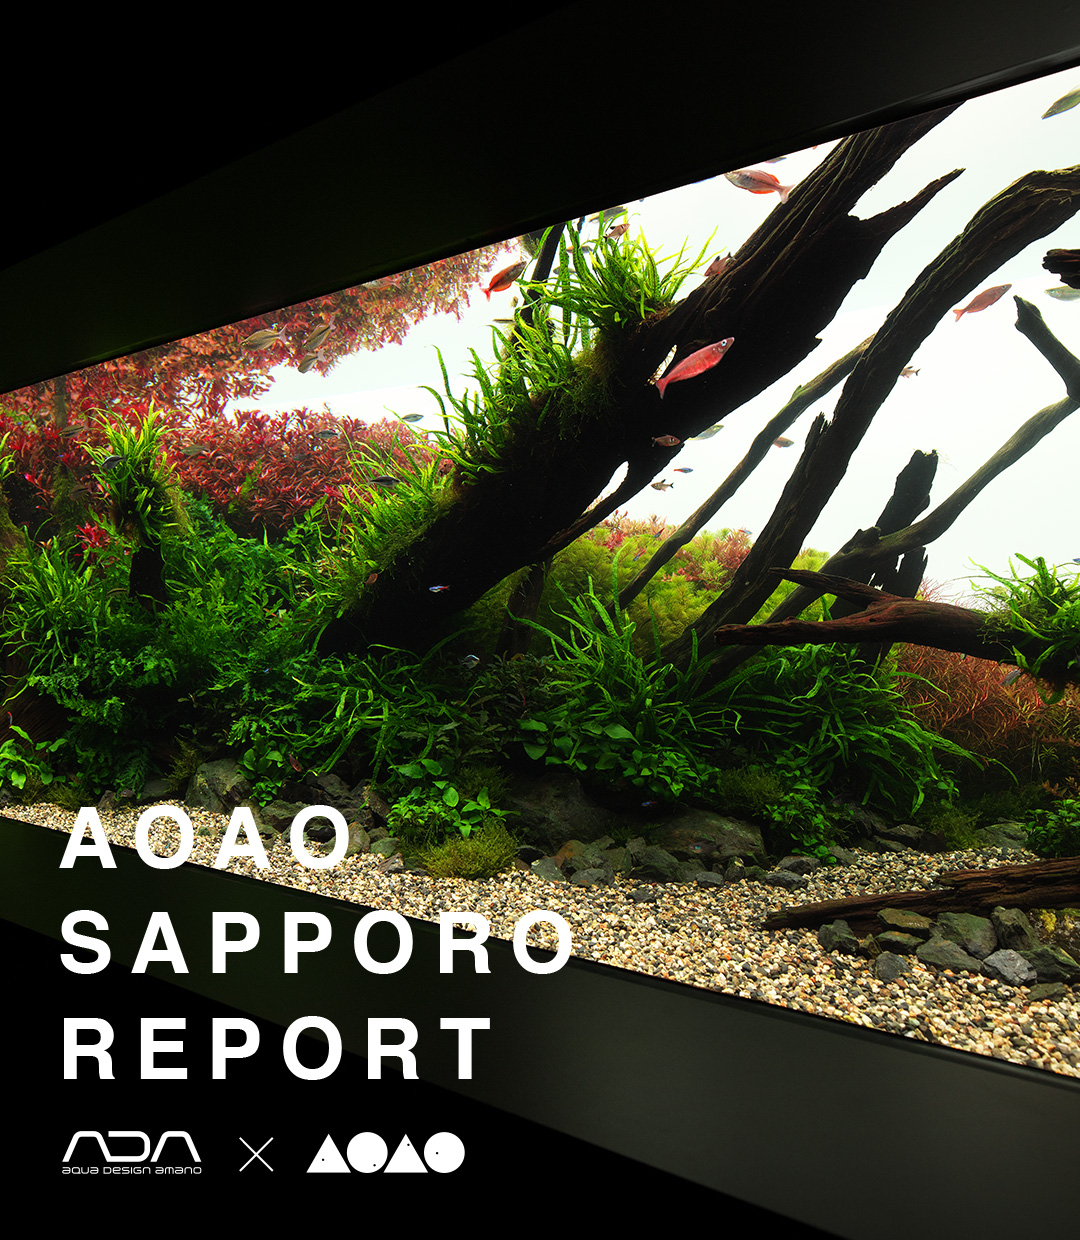 AOAO SAPPORO REPORT 01